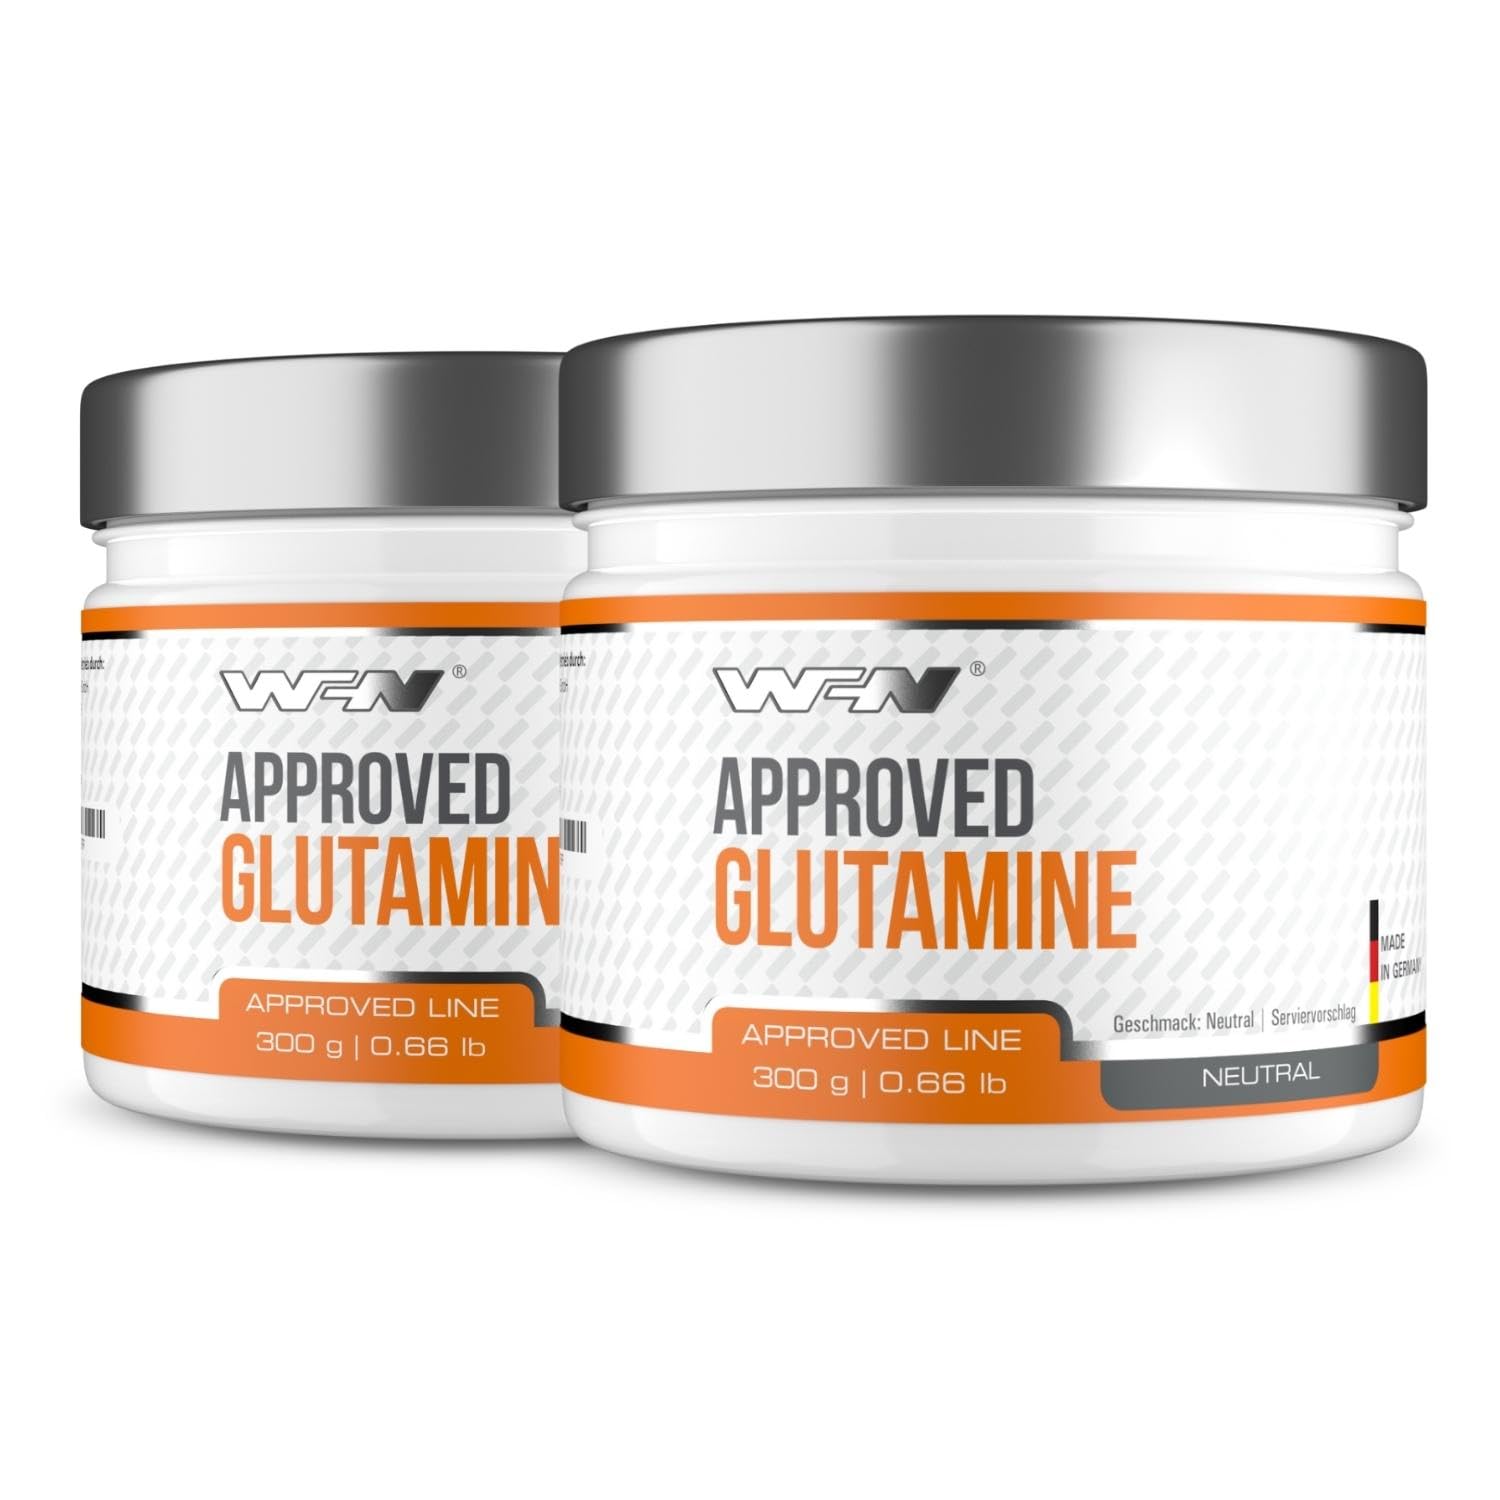 WFN Approved Glutamine - L-Glutamin Pulver vegan - 2x 300g Dose - Glutamin Ultrapure - Hochdosiert & Geschmacksneutral - Ohne Zusätze - 120 Portionen - Made in Germany - Extern laborgeprüft